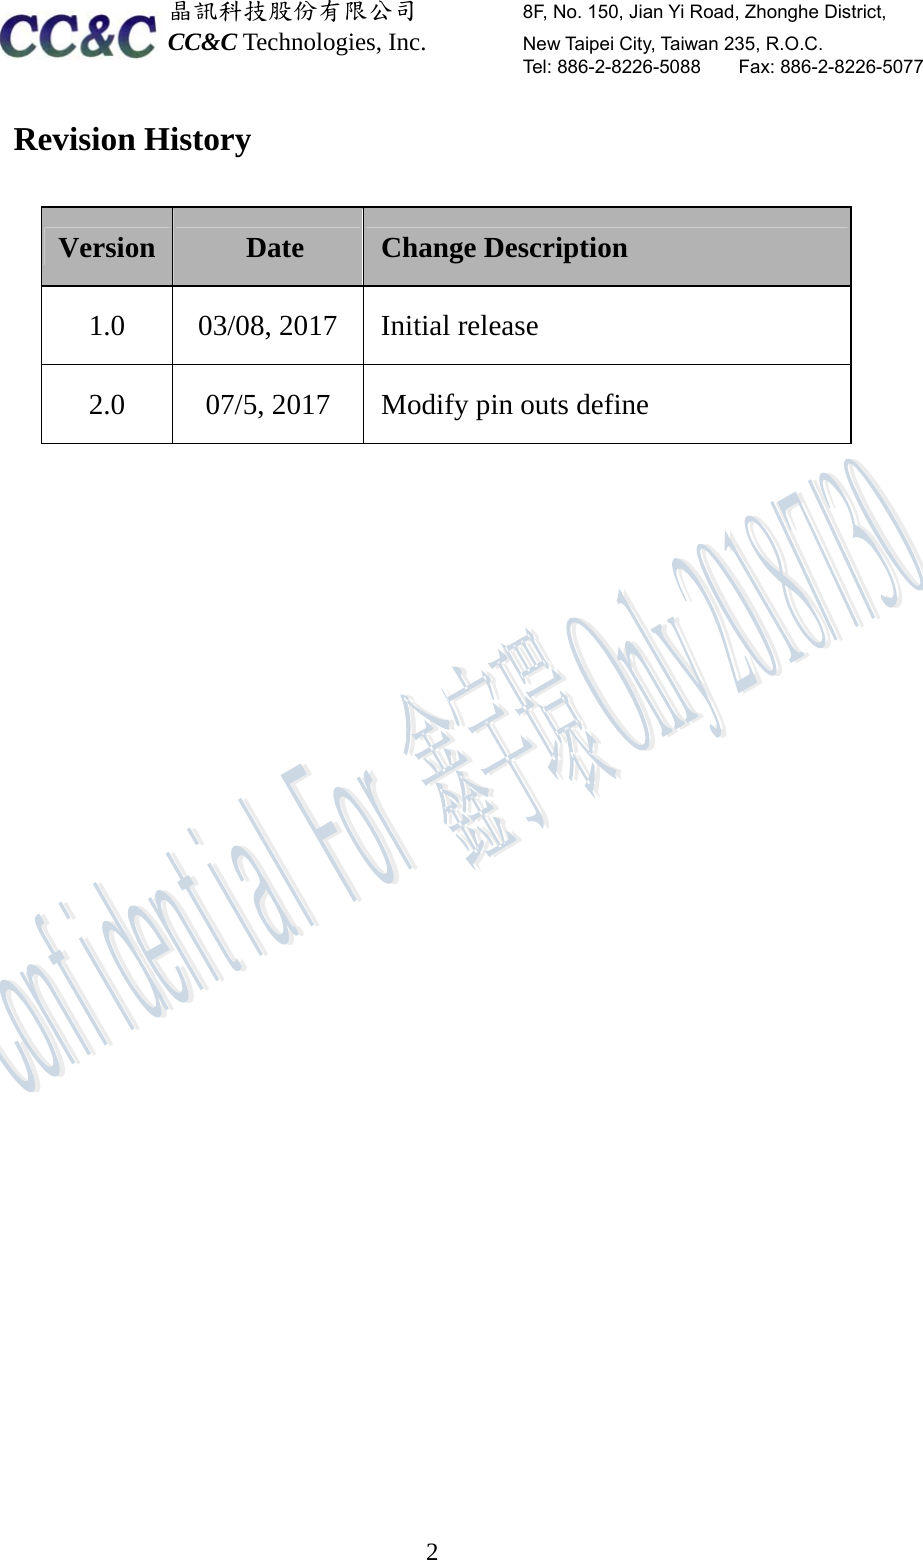  晶訊科技股份有限公司         8F, No. 150, Jian Yi Road, Zhonghe District,   CC&amp;C Technologies, Inc.        New Taipei City, Taiwan 235, R.O.C.   Tel: 886-2-8226-5088    Fax: 886-2-8226-5077  2Revision History Version  Date  Change Description 1.0    03/08, 2017  Initial release 2.0  07/5, 2017  Modify pin outs define      